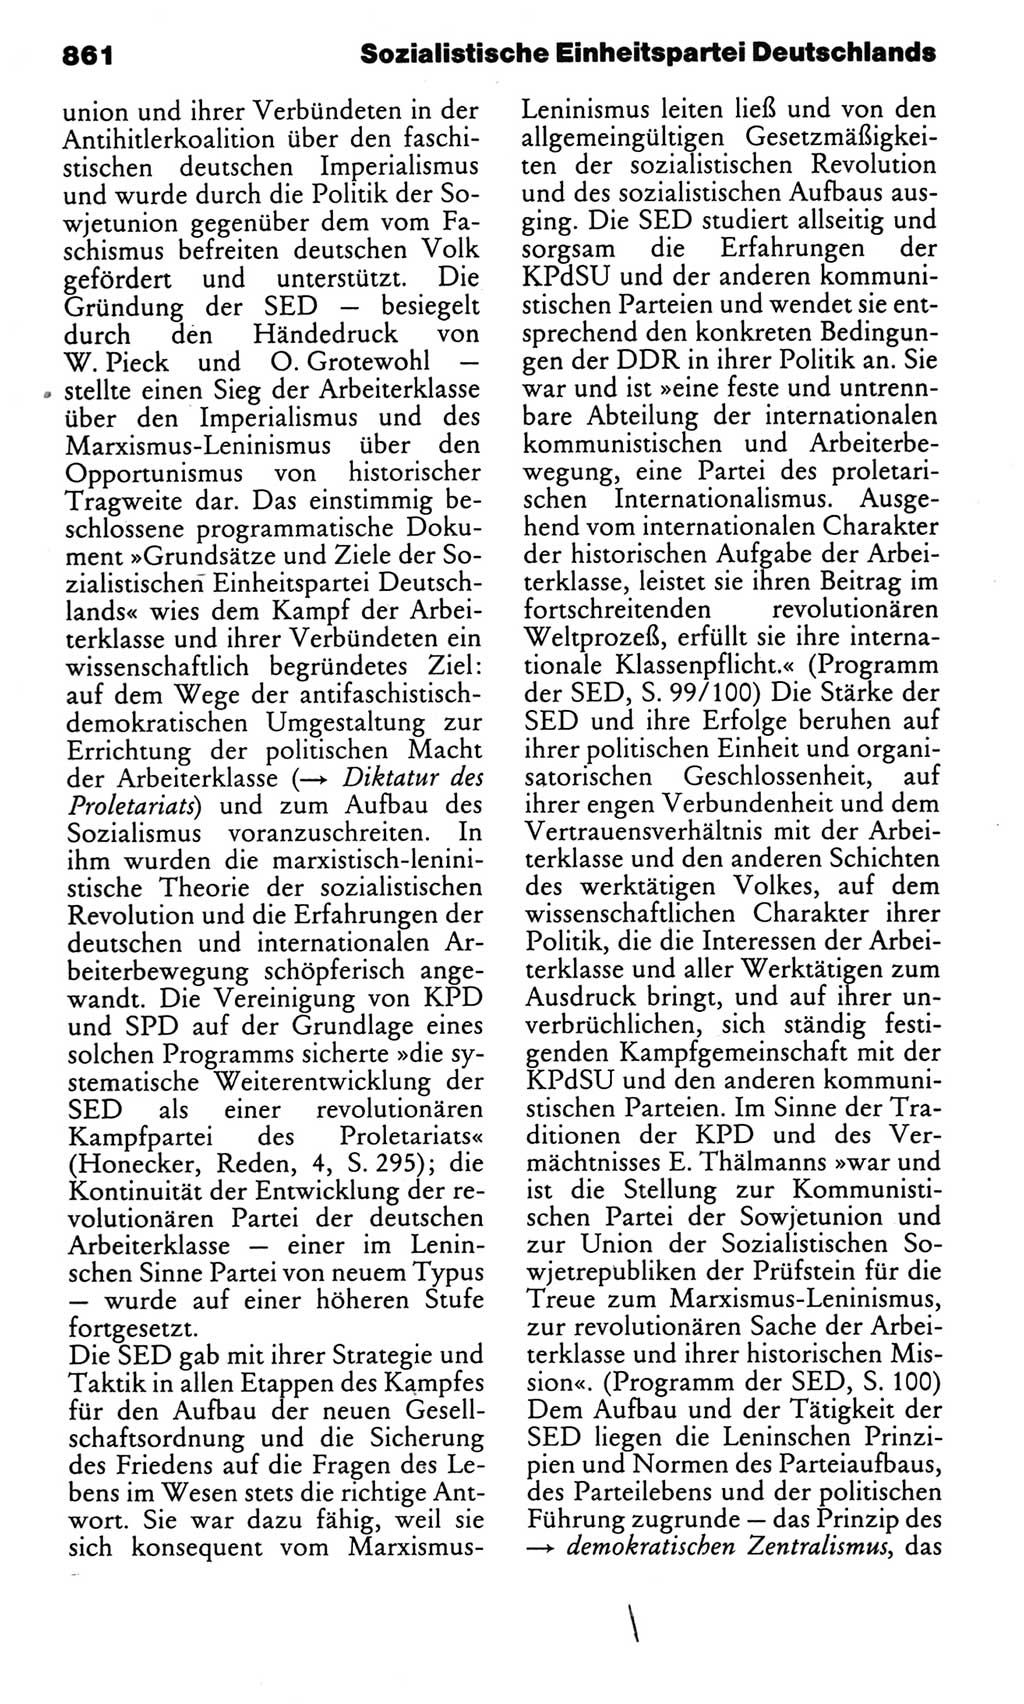 Kleines politisches Wörterbuch [Deutsche Demokratische Republik (DDR)] 1983, Seite 861 (Kl. pol. Wb. DDR 1983, S. 861)